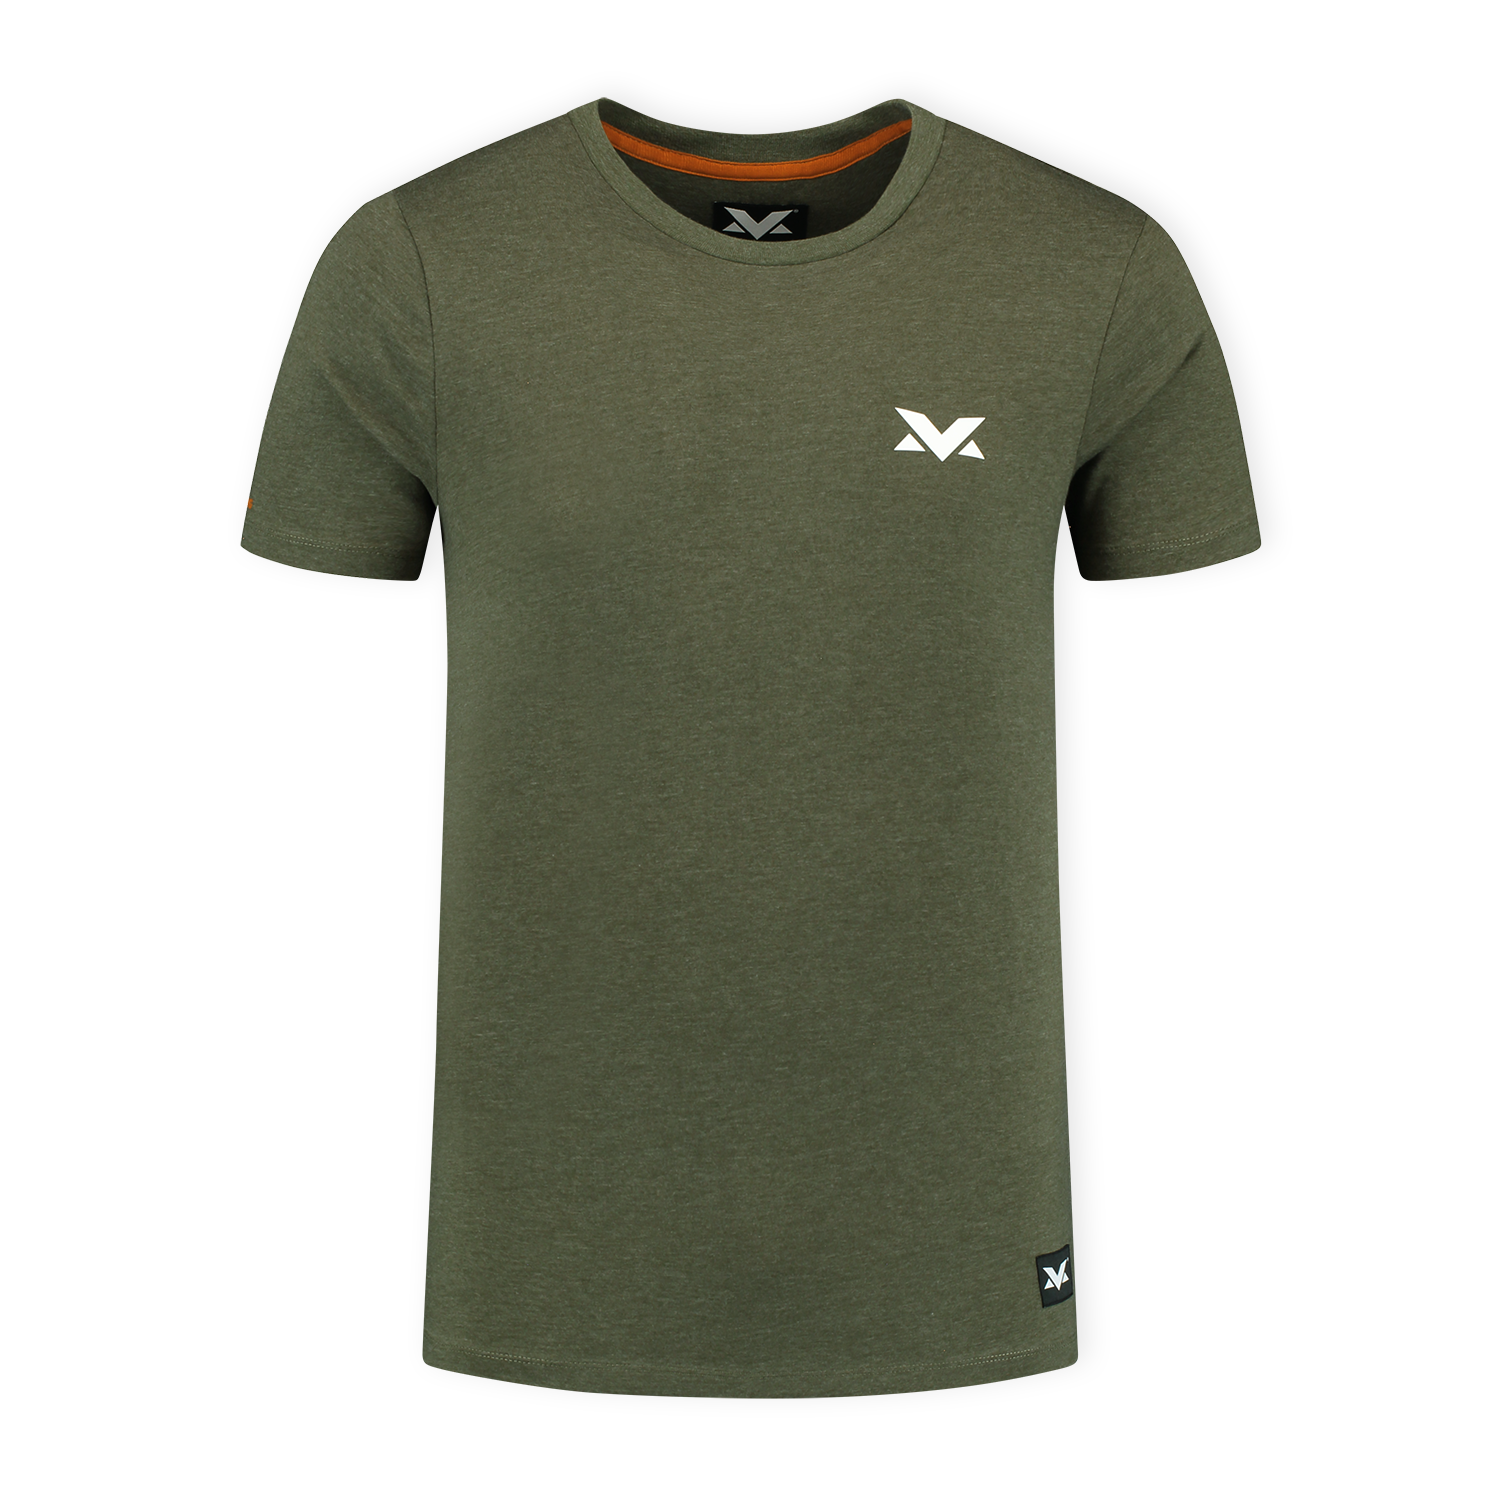 MV T-shirt The Limits - Groen - S - Max Verstappen